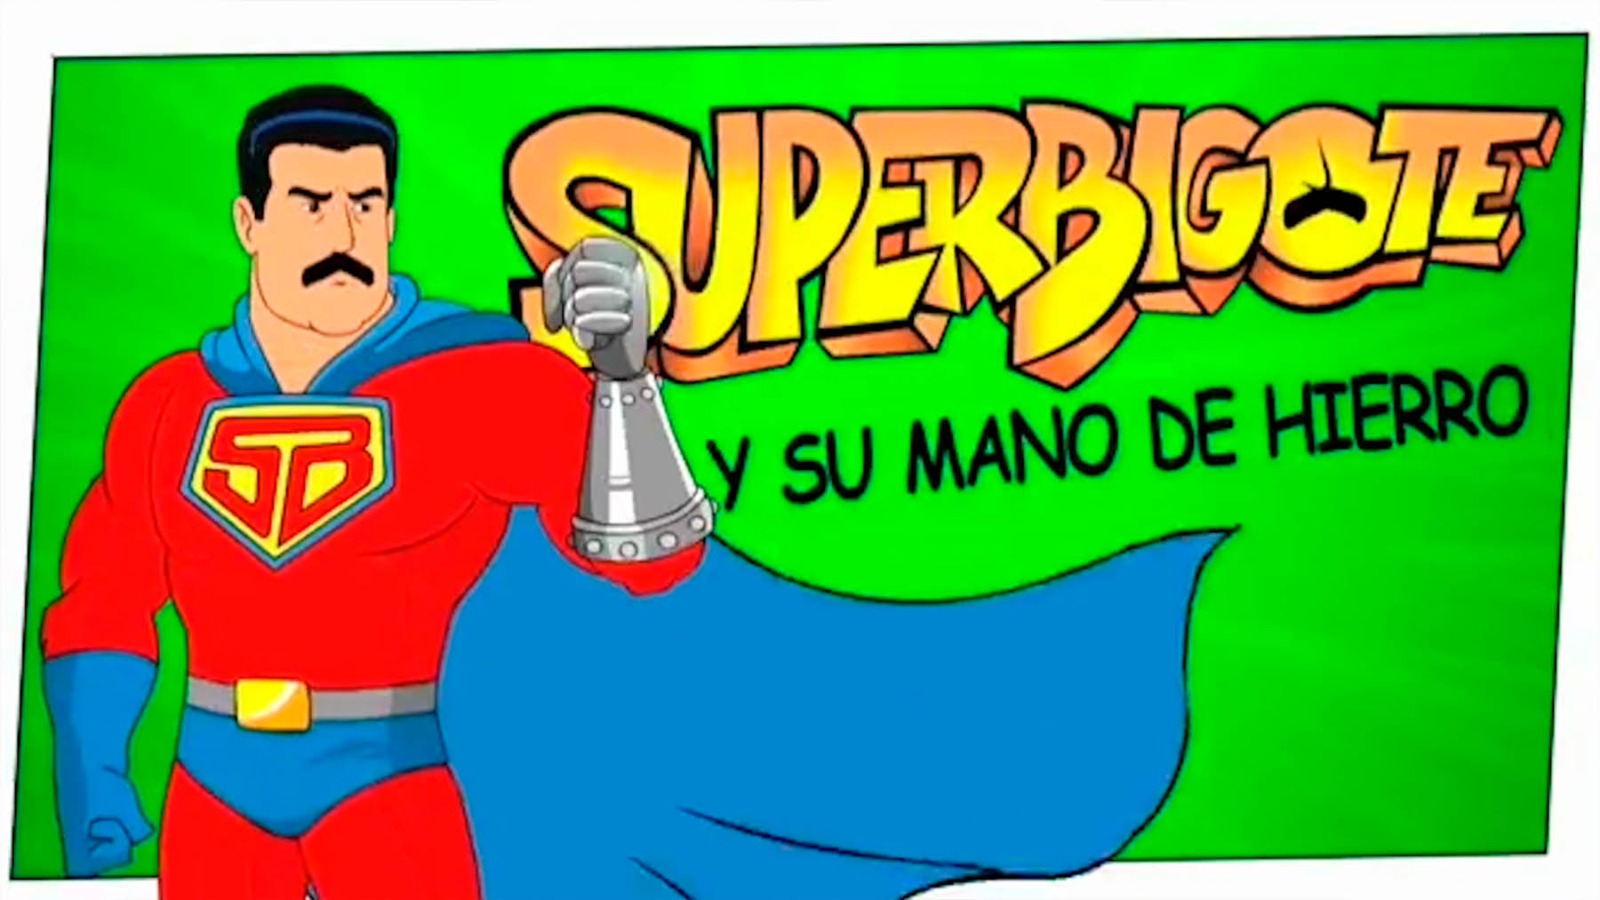 Superbigote, el ‘alter ego’ de Maduro en cómic.